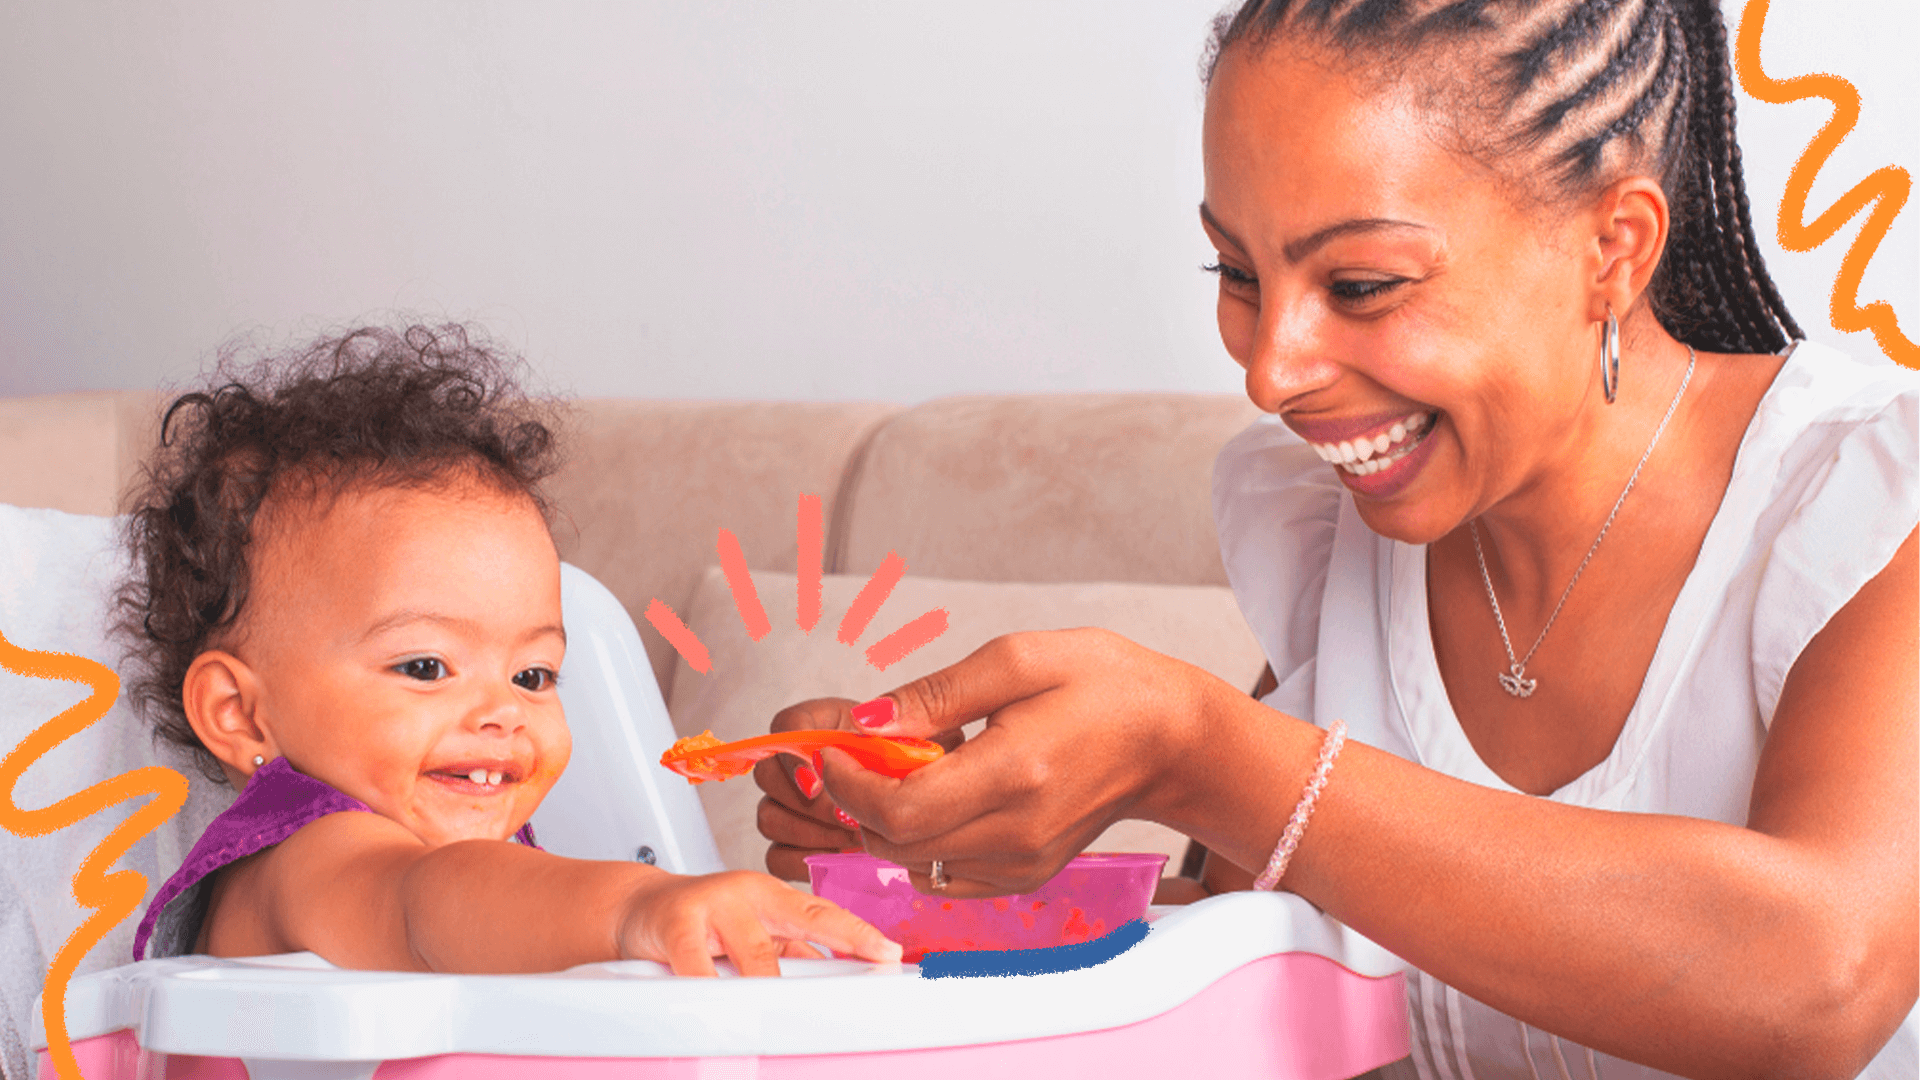 imagem ilustra matéria sobre o guia alimentar da OMS e mostra um bebê negro sentado em uma cadeirinha de alimentação, srrindo e comendo ao lado d amãe, uma mulher negra, sorrindo e segurando um prato de comida.